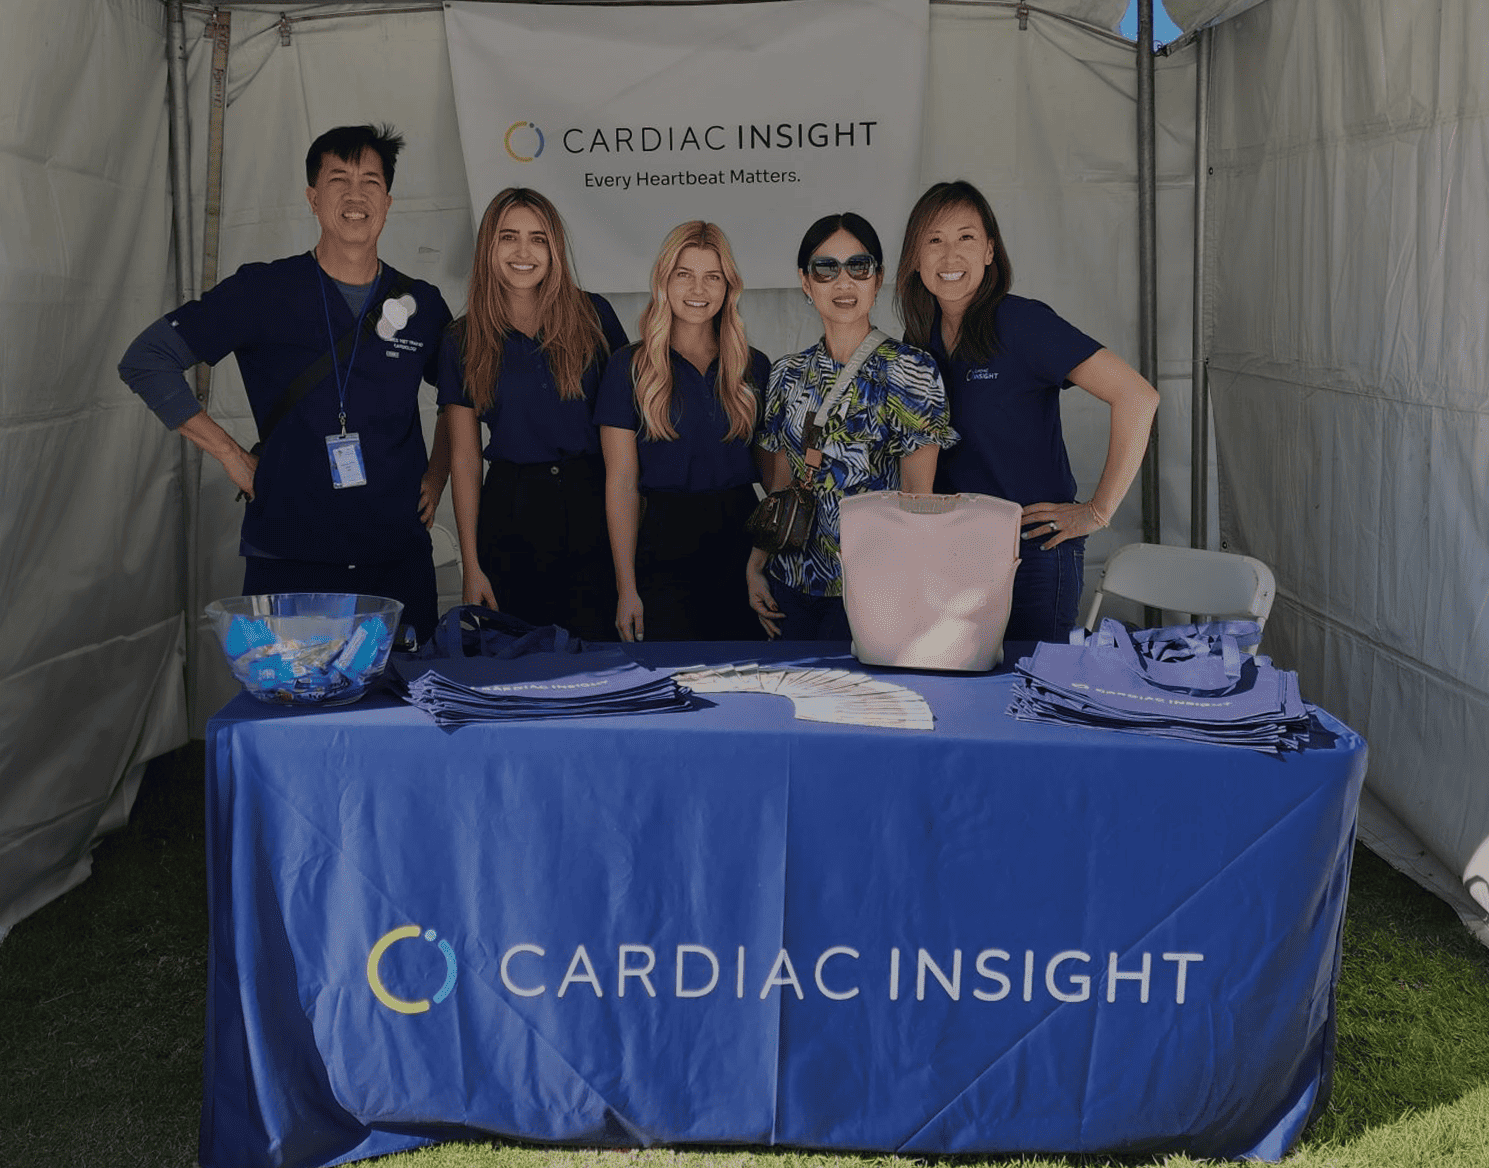 Cardiac Insight Sponsors VPASC’s Annual Health Fair, Aiding in Cardiovascular Education and Community Health